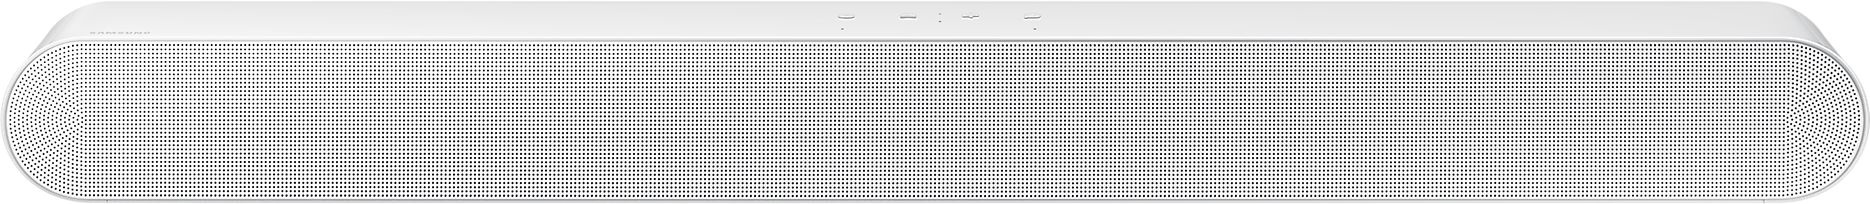 Саундбар Samsung HW-S61B 5.0, цвет - белый, HW-S61B